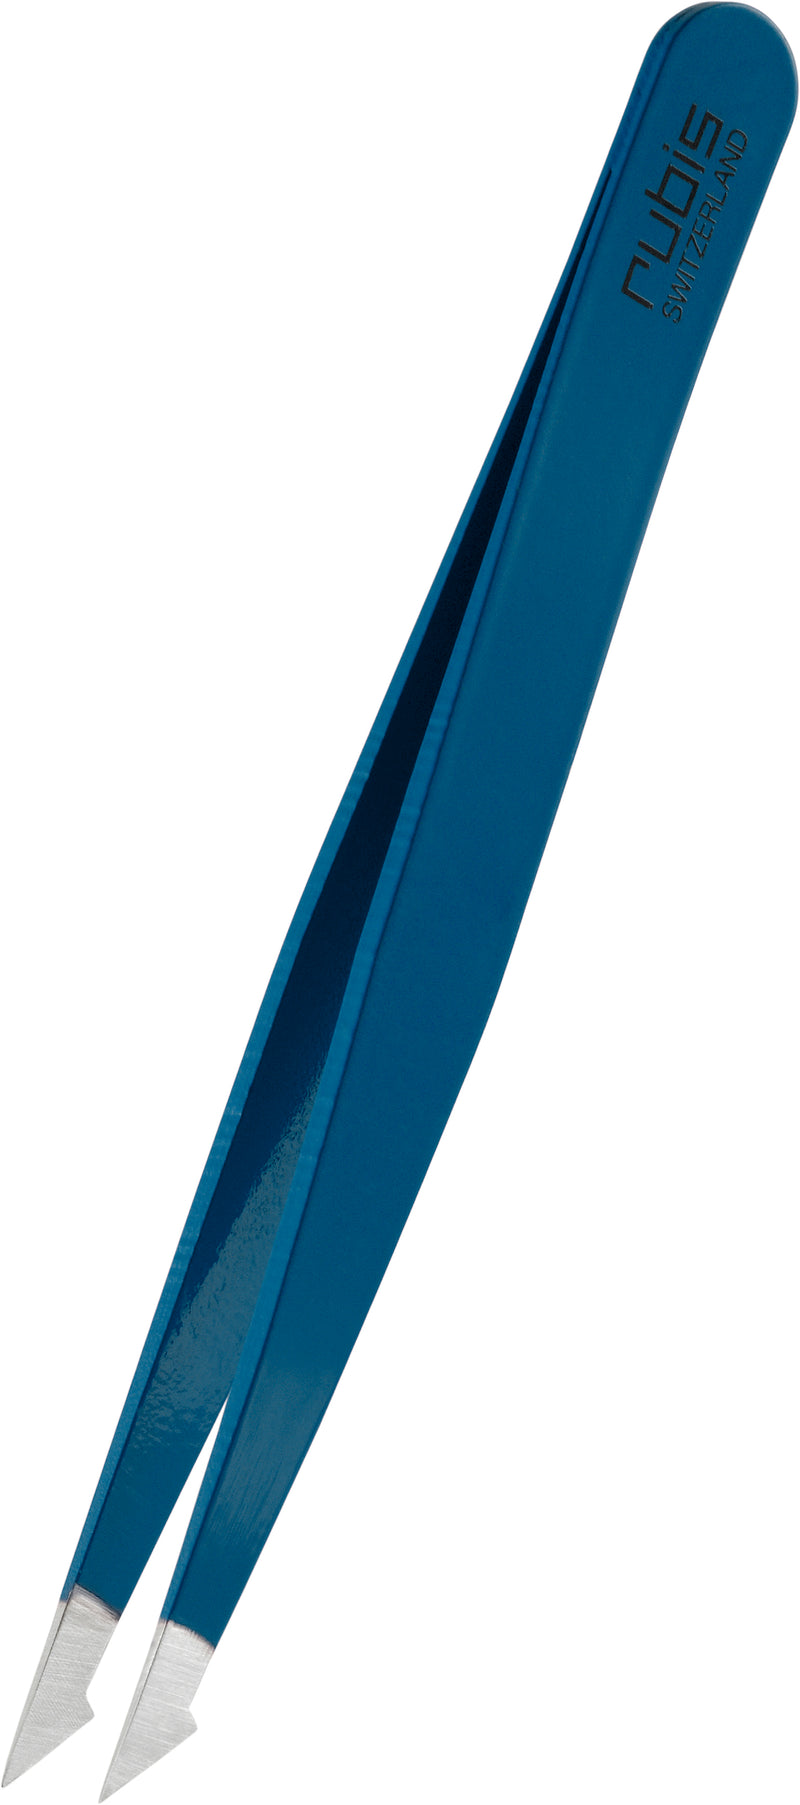 RUBIS Pinzette evolution, blau, Inox